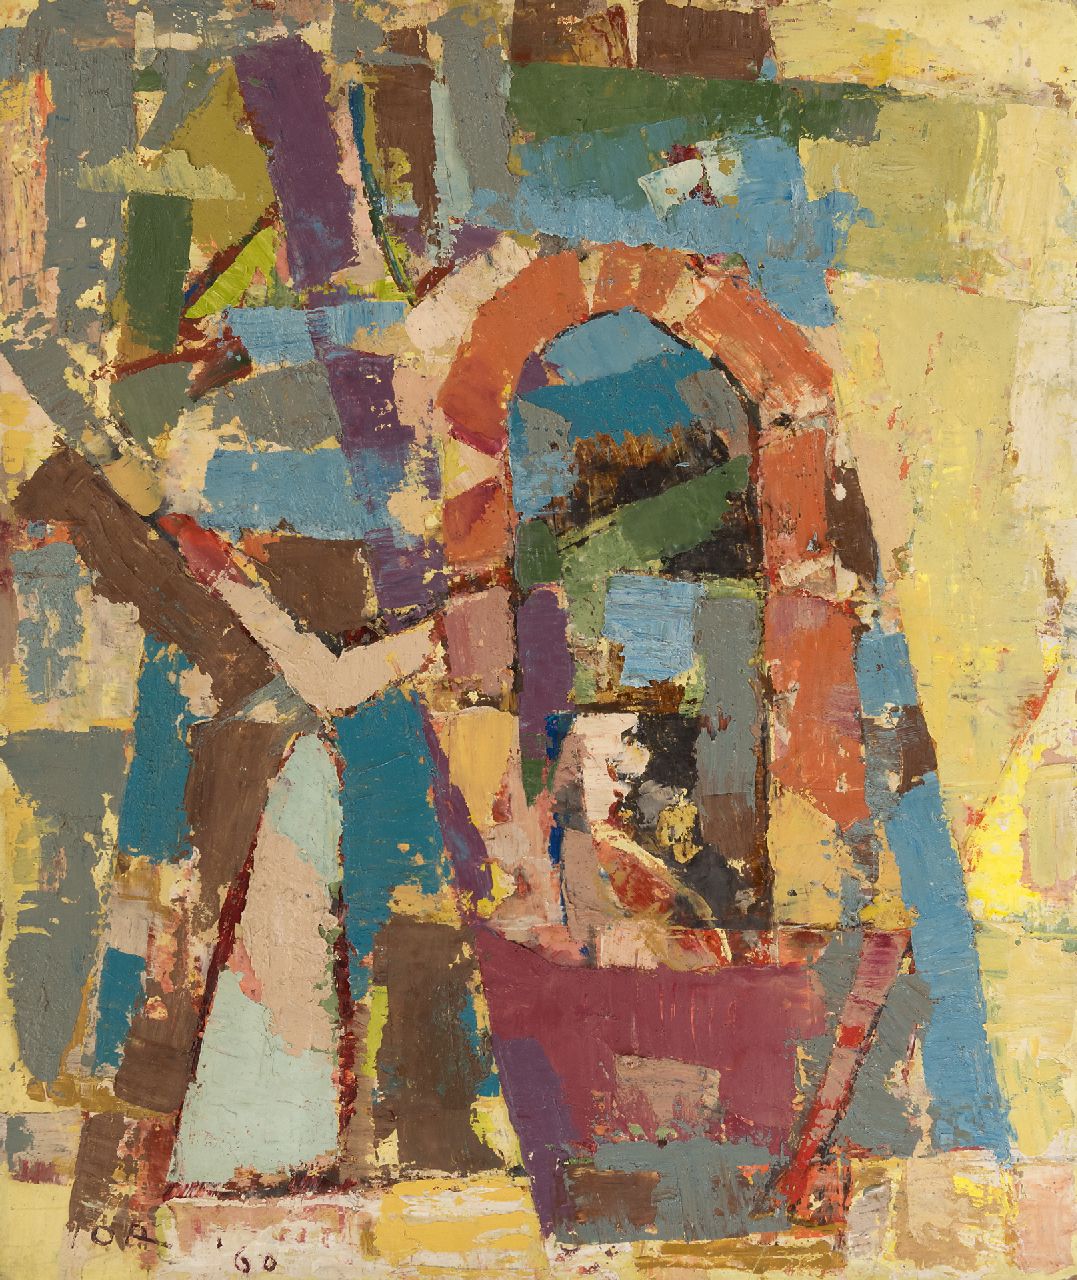 Jordens J.G.  | 'Jan' Gerrit Jordens, Komposition, Öl auf Holzfaser 59,0 x 50,0 cm, Unterzeichnet l.u. und datiert '60